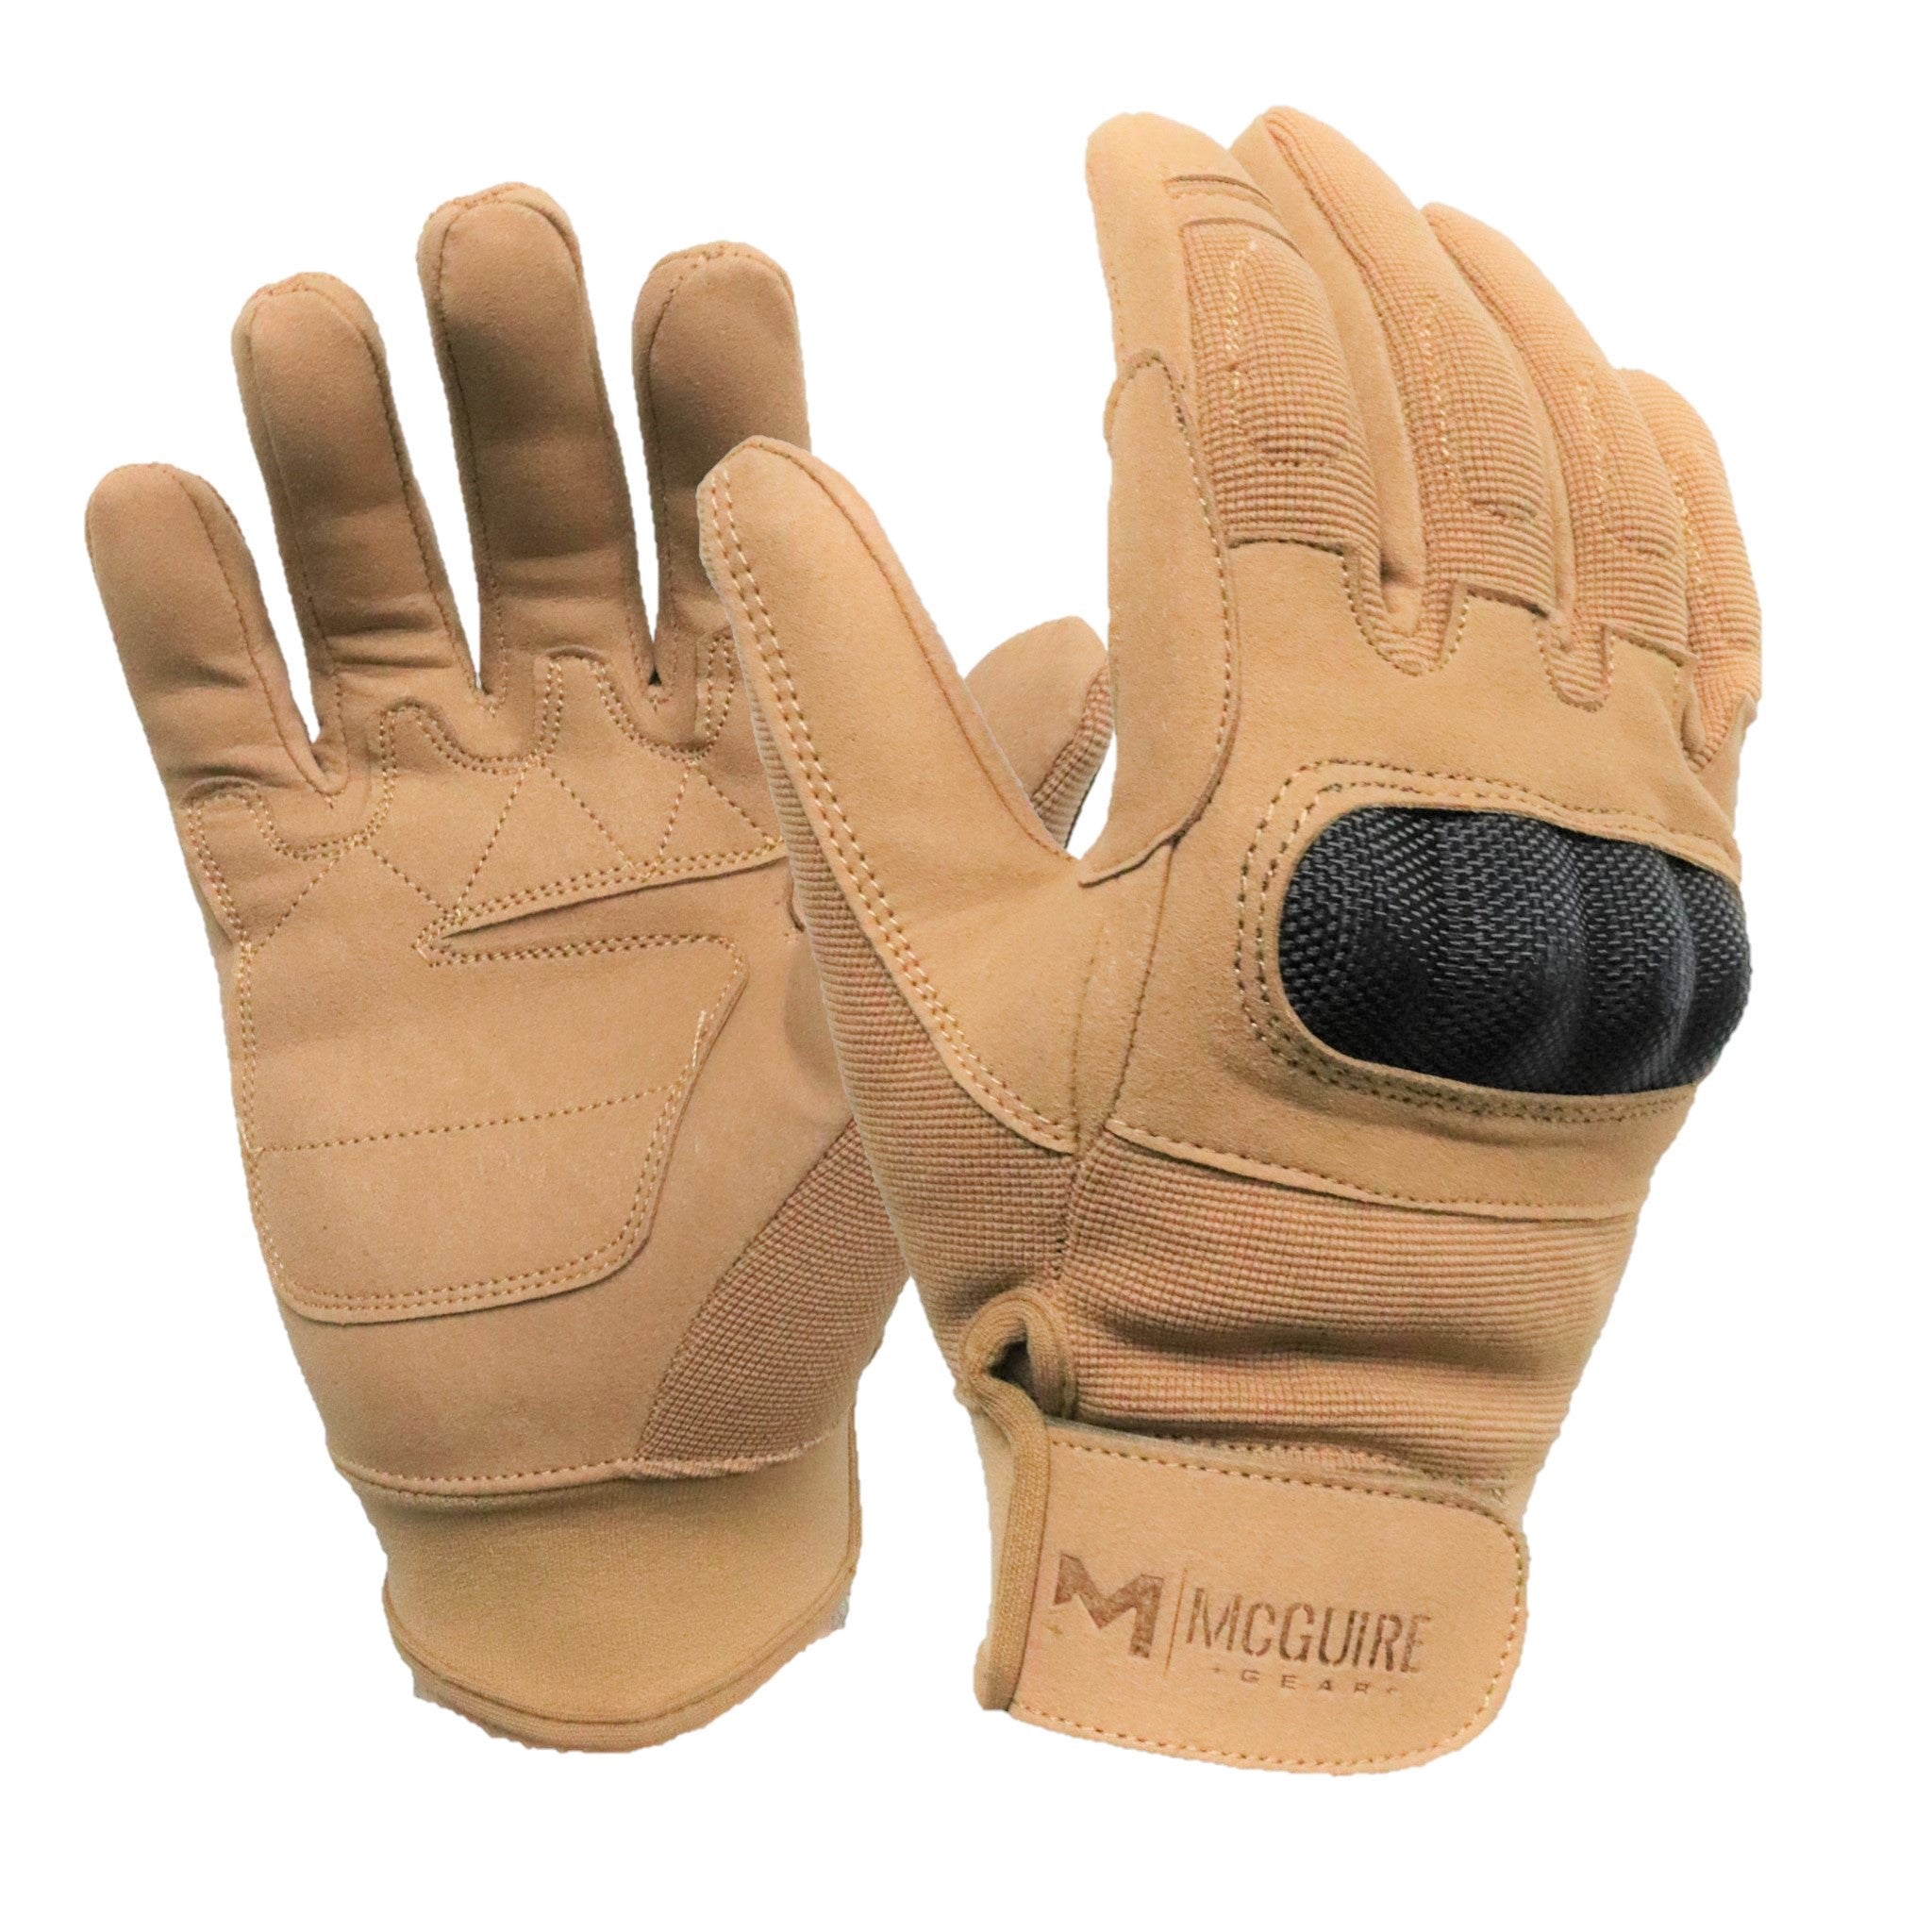 brass knuckle gloves